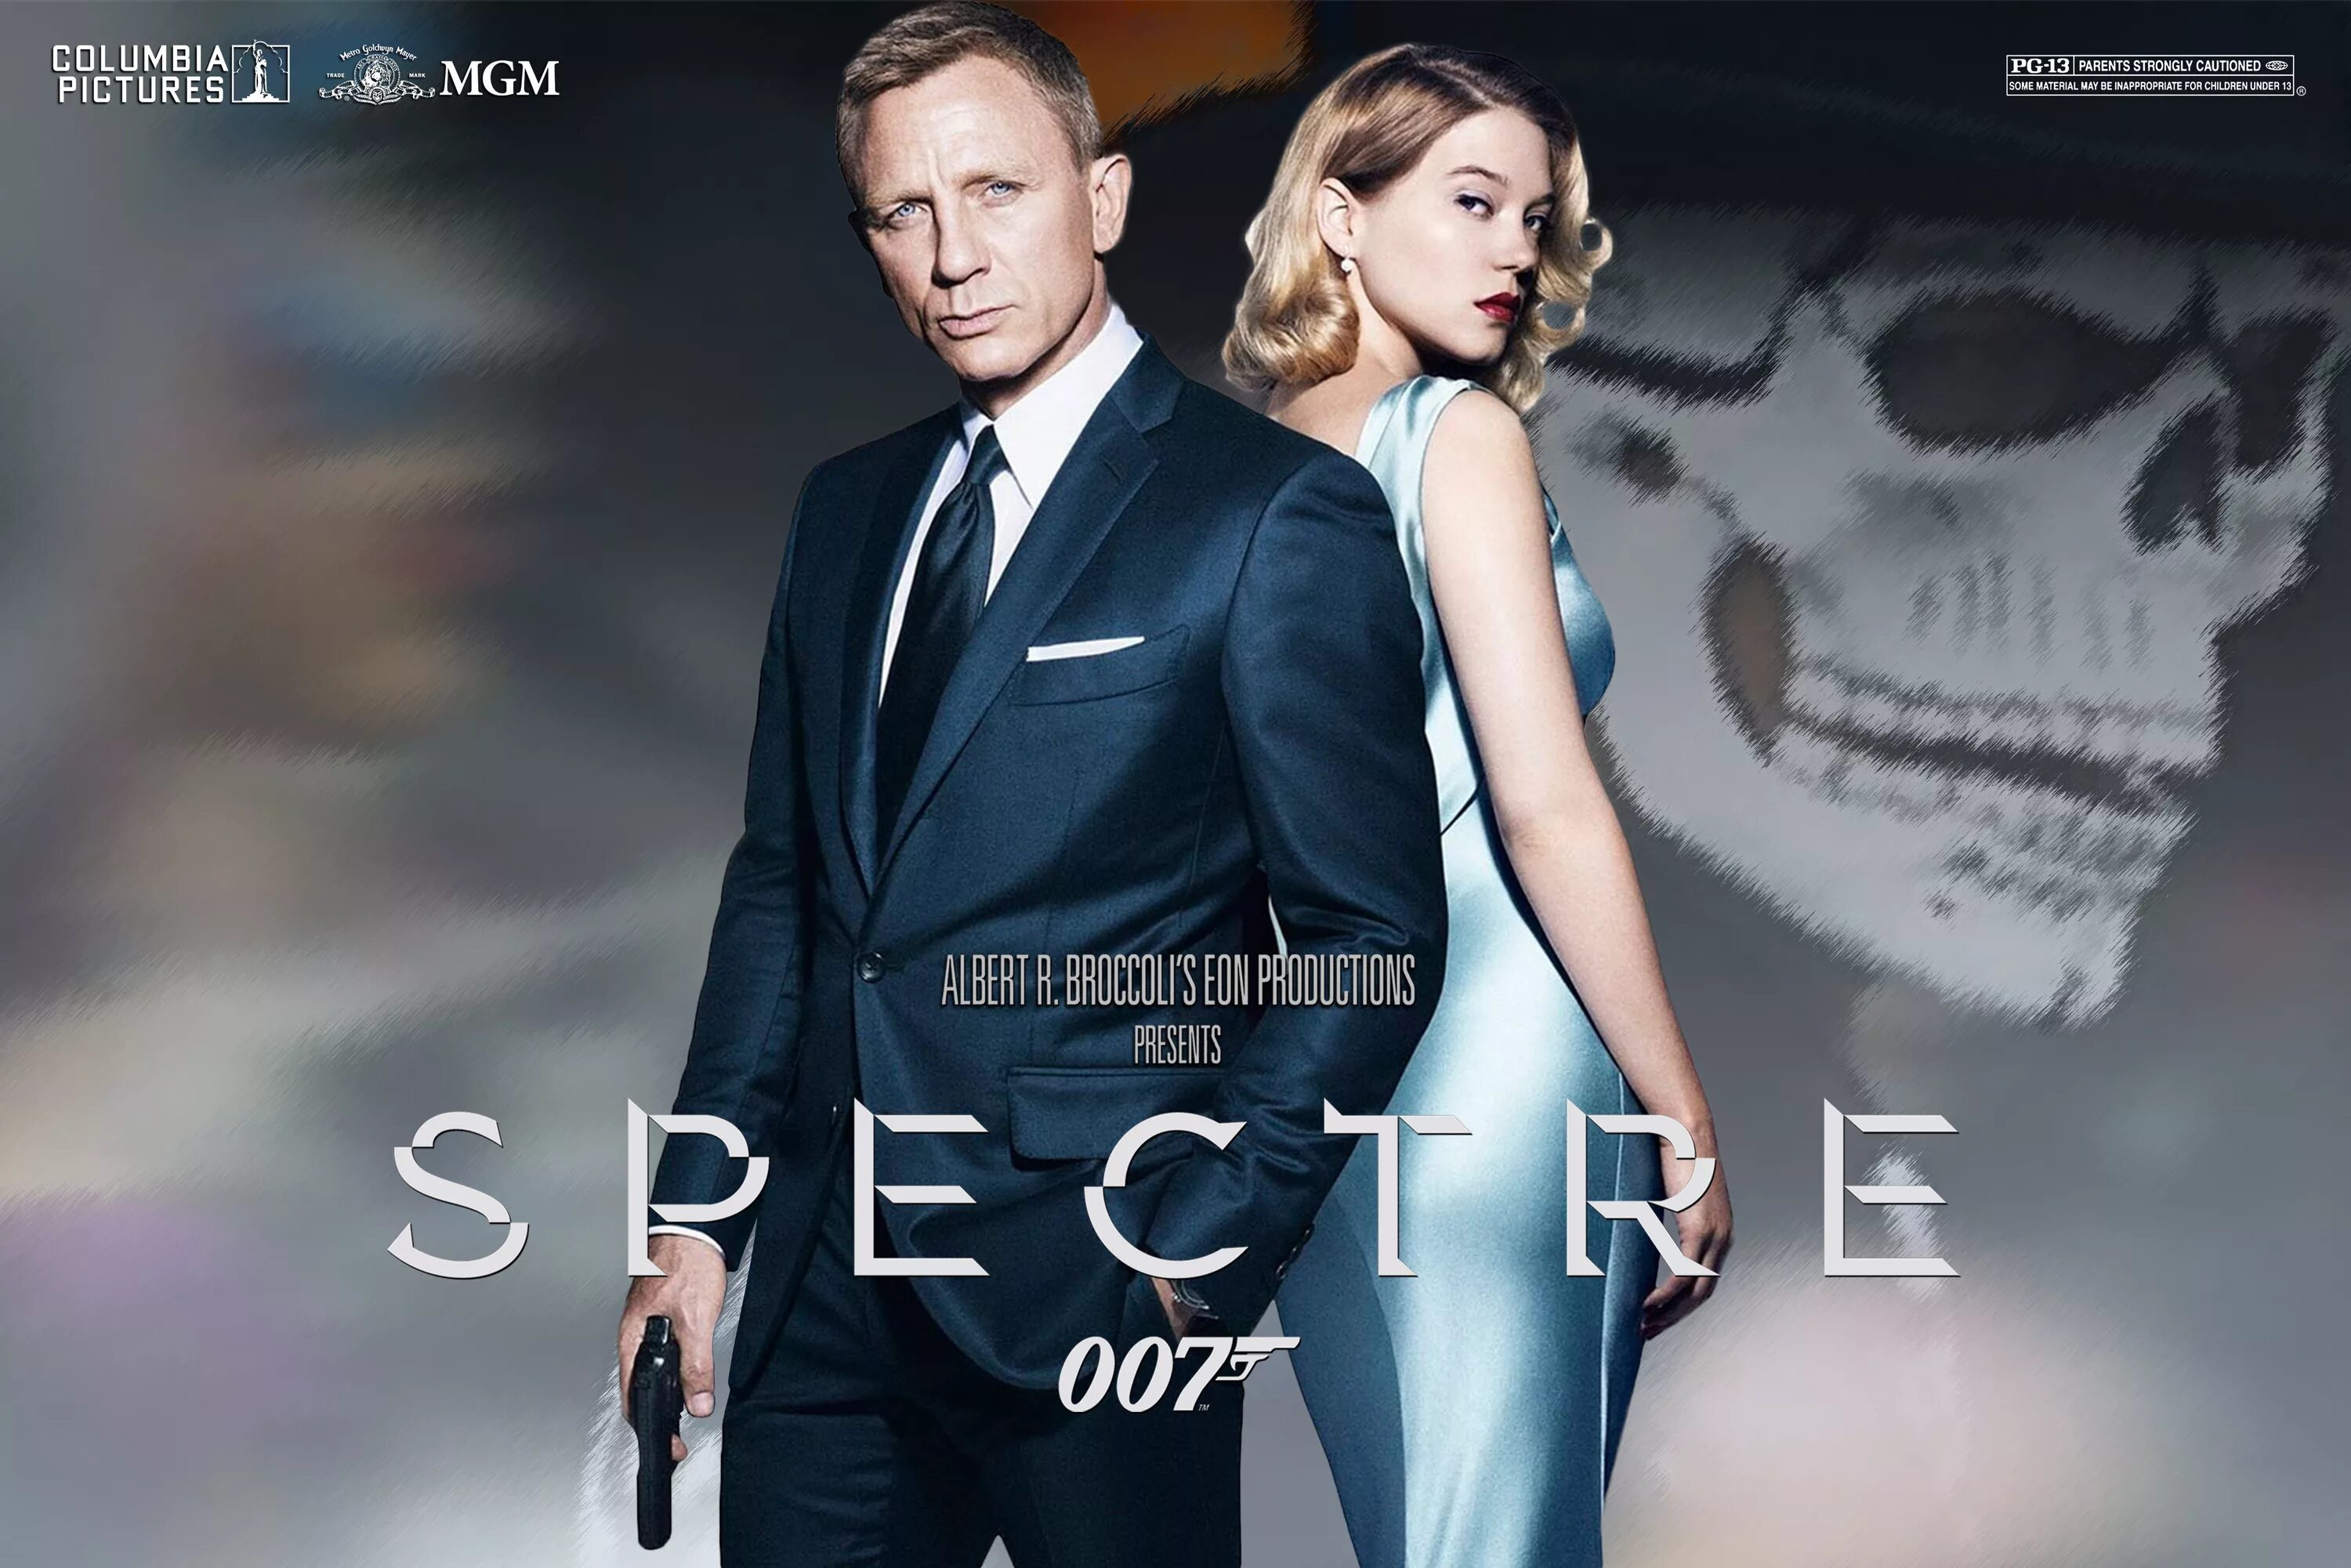 007: Спектр (2015) Постер. James Bond 007 Spectre. Spectre (2015) Blu-ray. 007 Обложки спектр Spectre, 2015. Spectre перевод